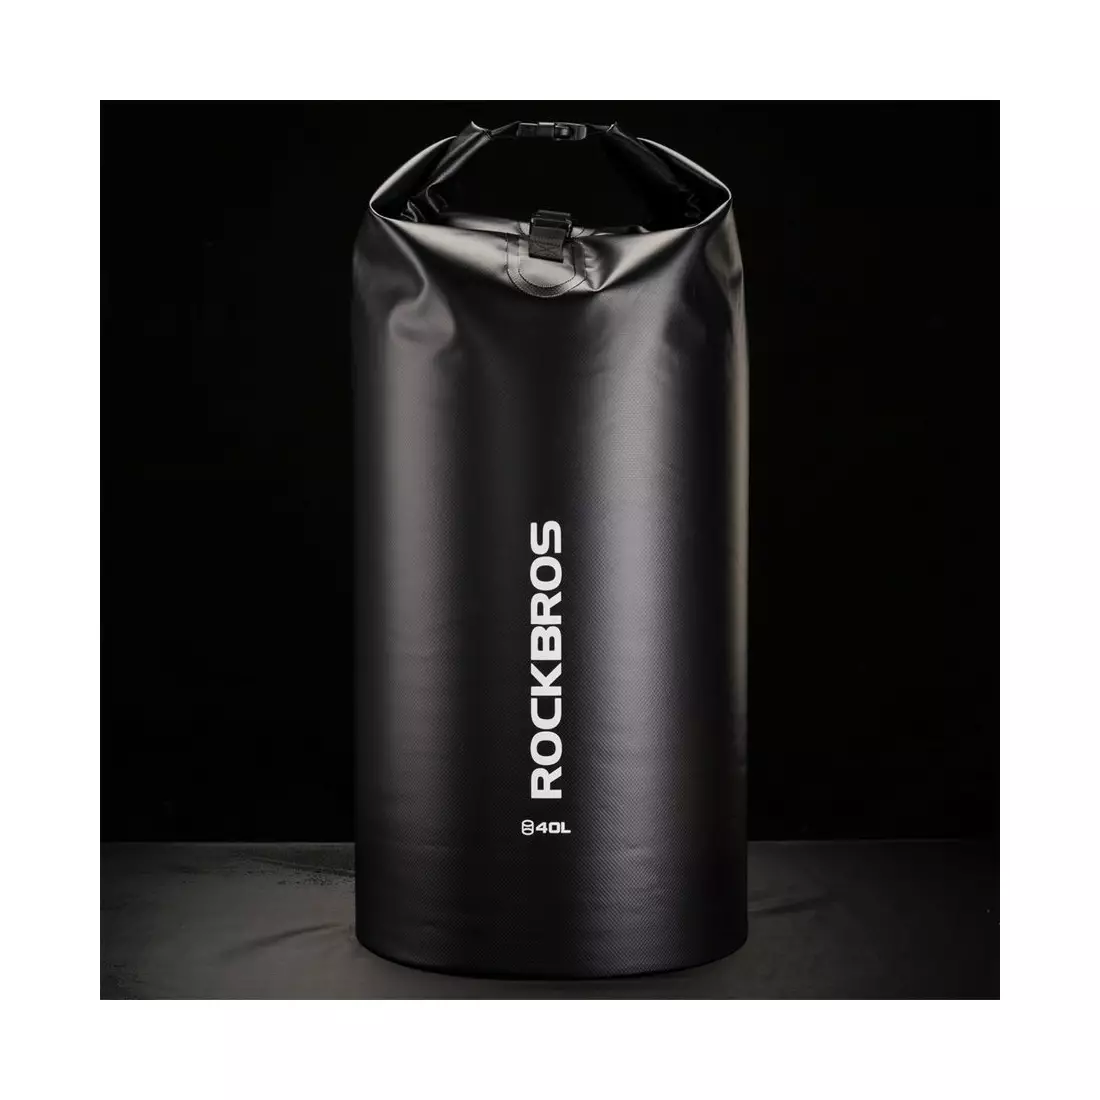 Rockbros vodotěsný batoh / taška 40L, Černá ST-007BK